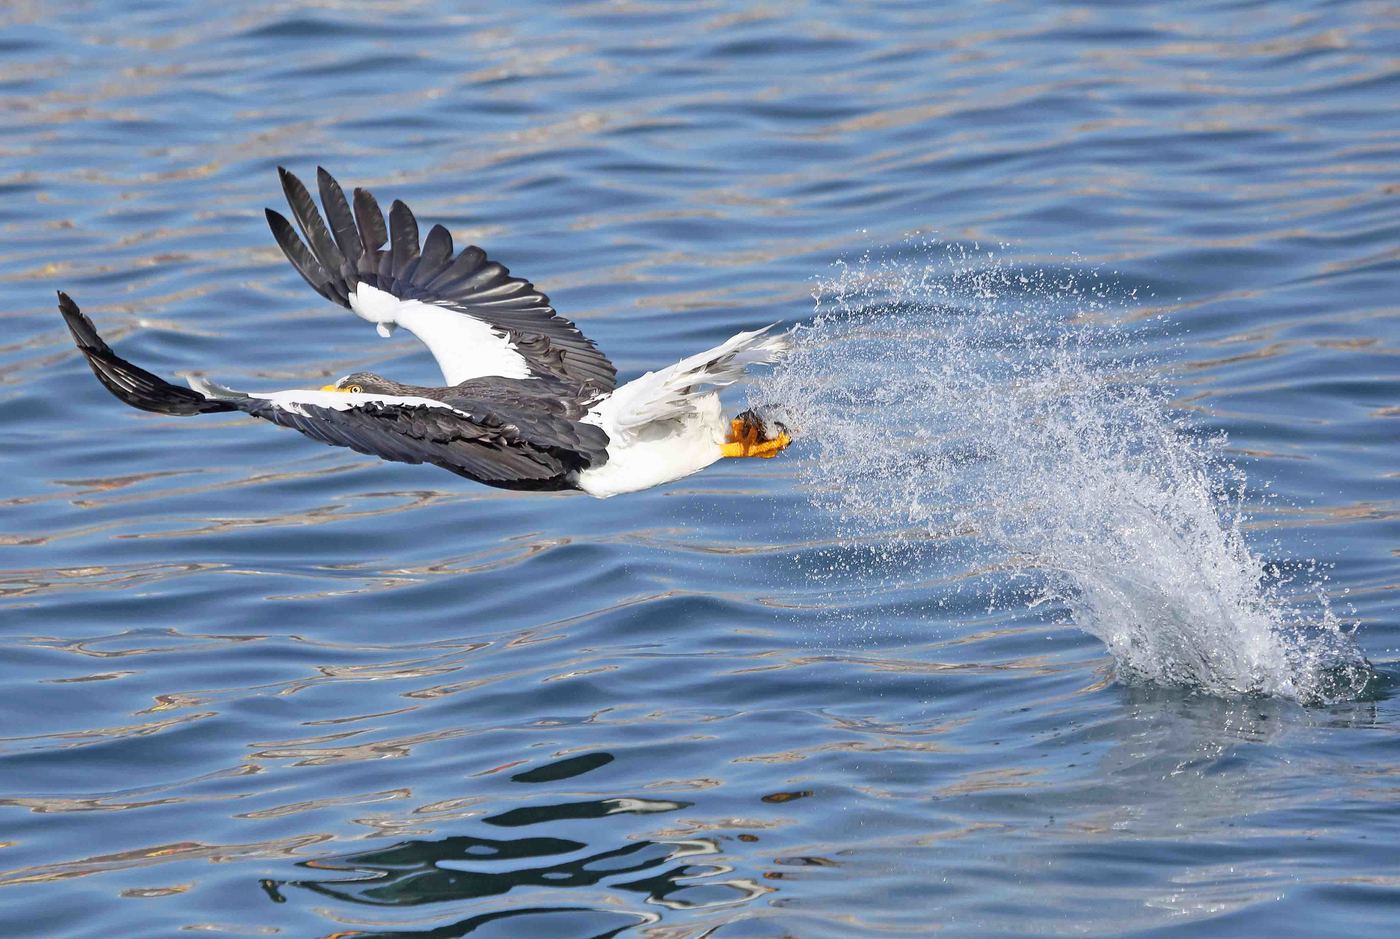 The sea eagle hunts for fish